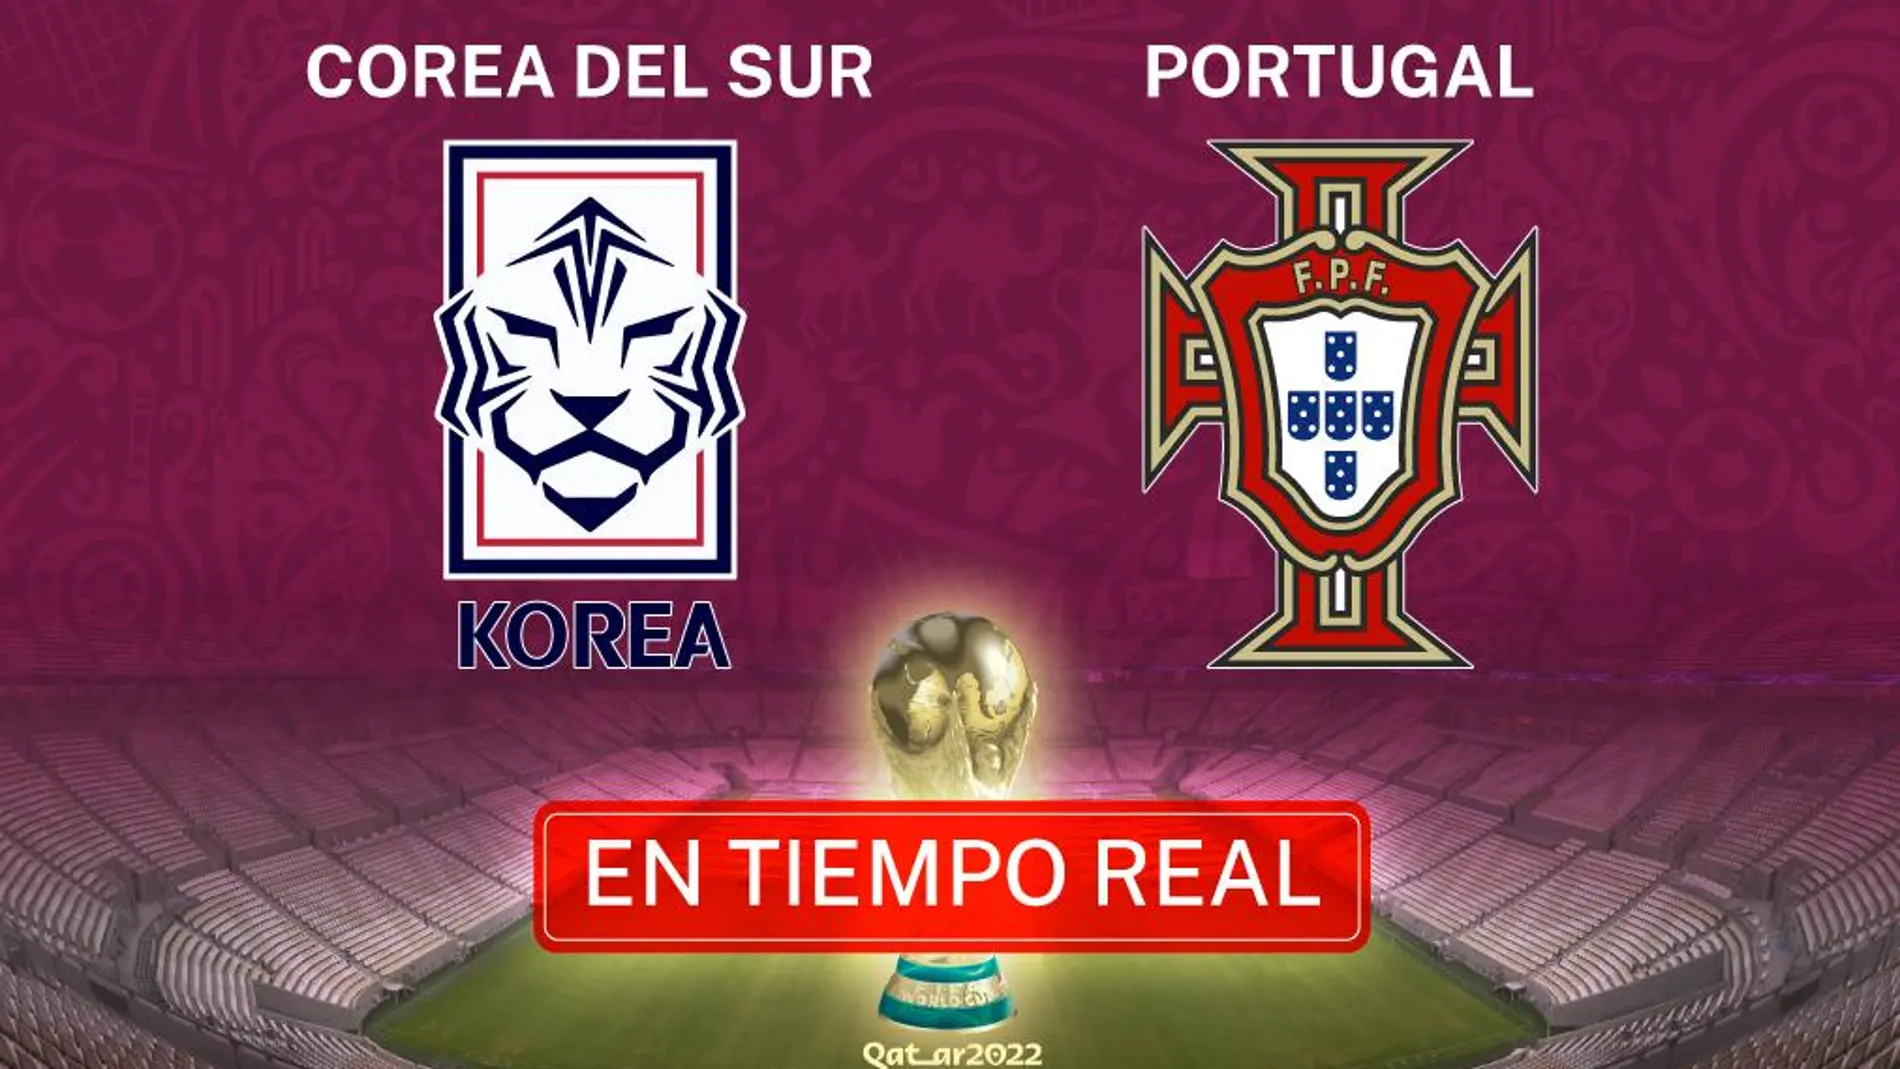 Corea del Sur - Portugal